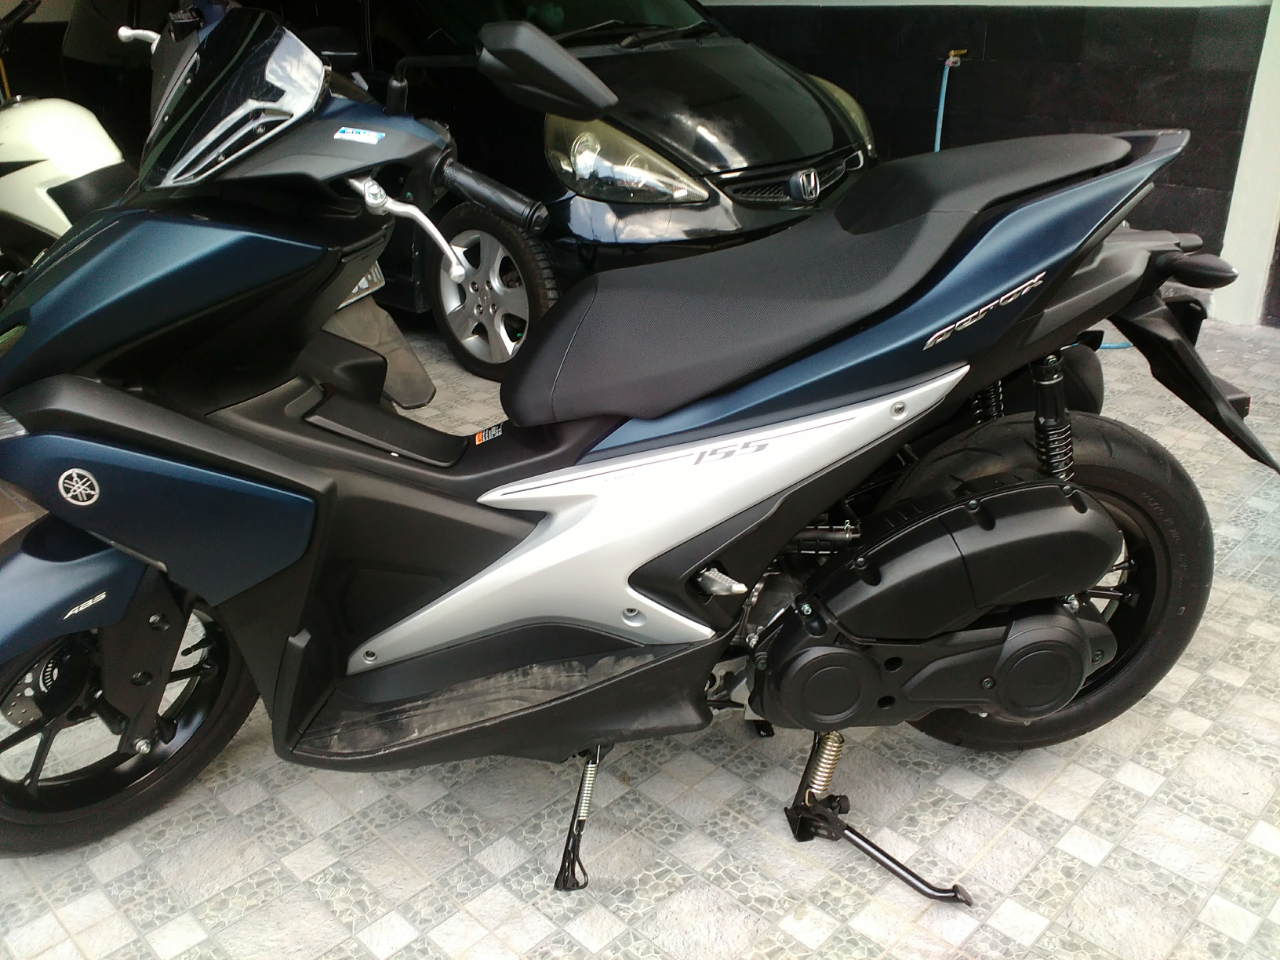 Download Ide 93 Gambar Motor Yamaha Aerox 155 Vva Terlengkap Nara